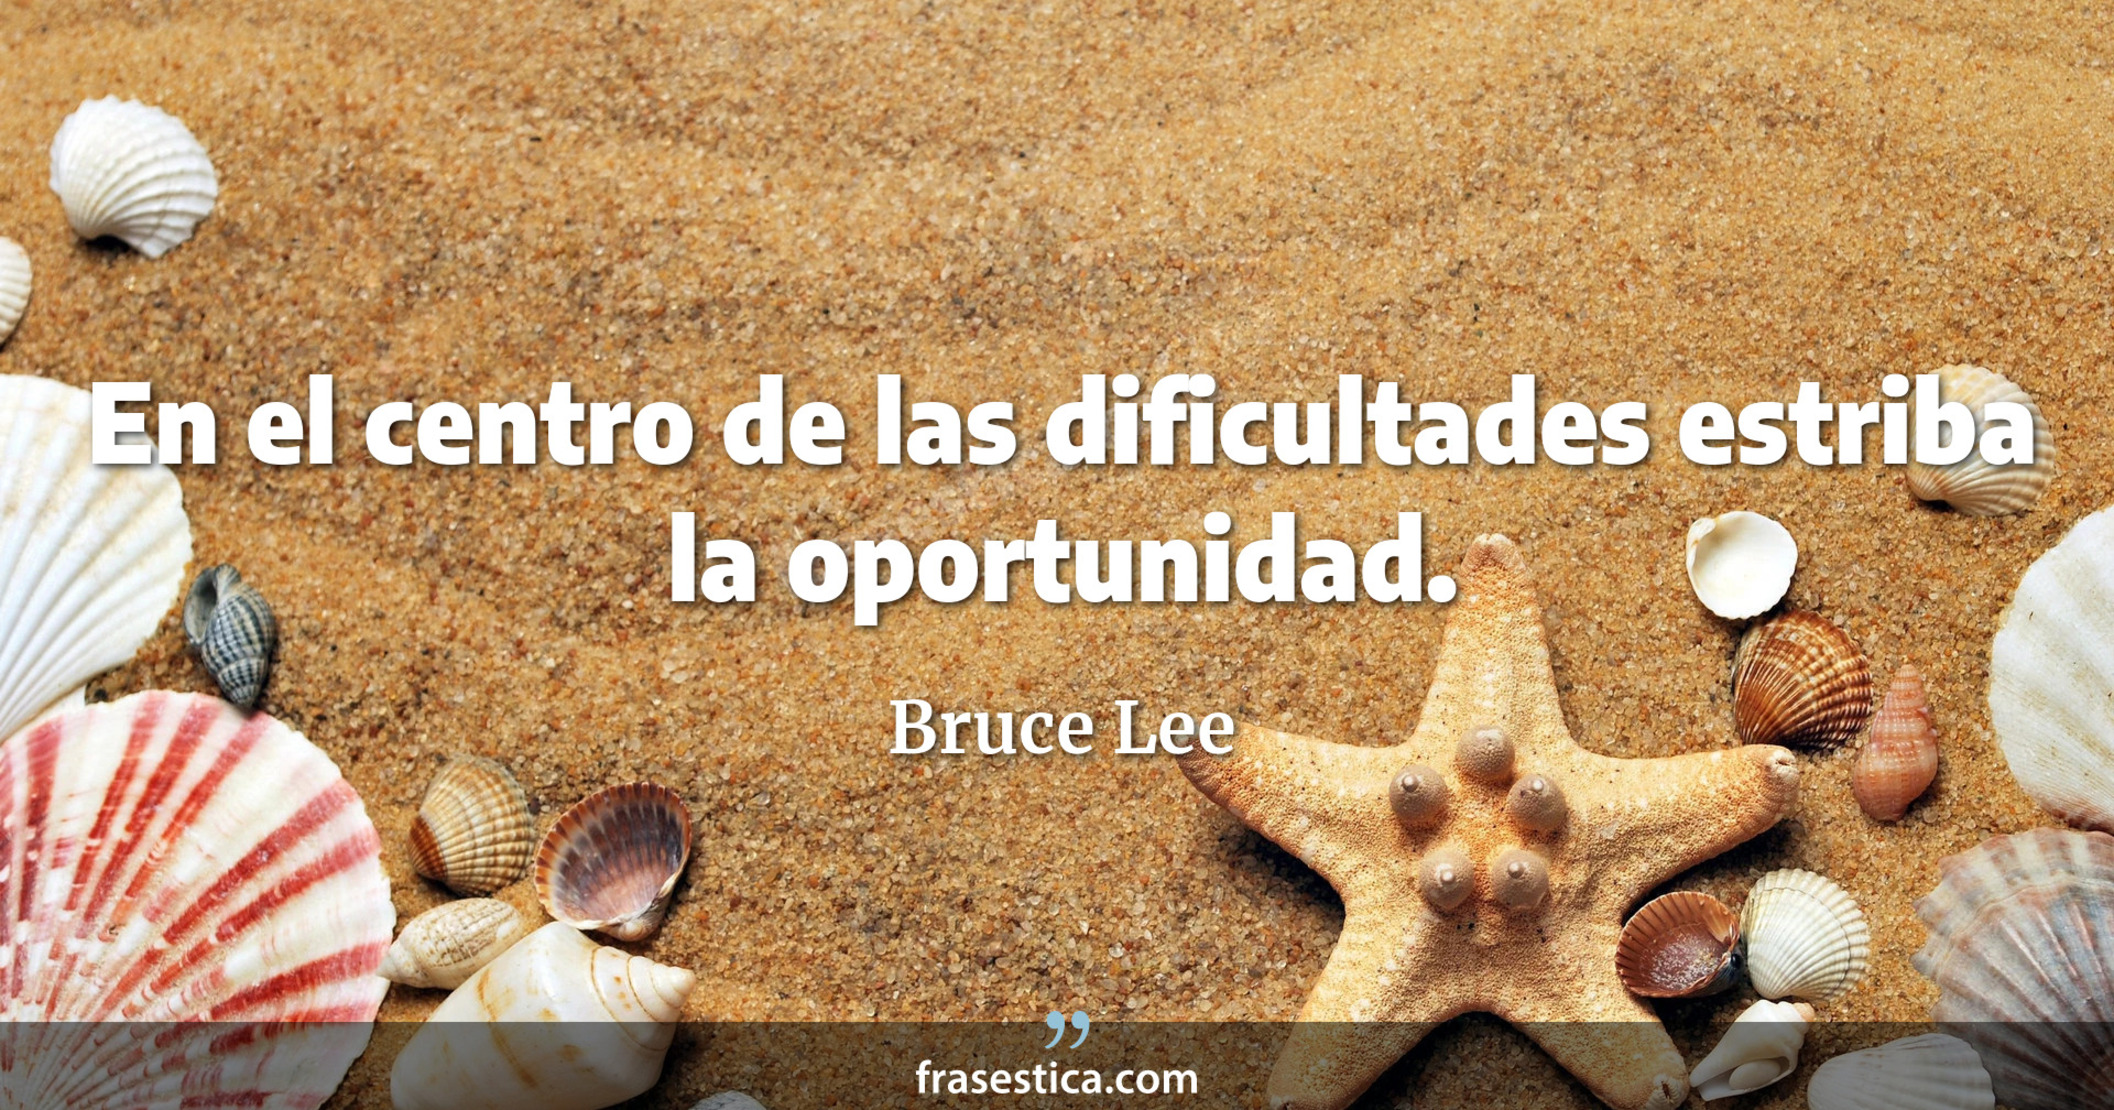 En el centro de las dificultades estriba la oportunidad. - Bruce Lee